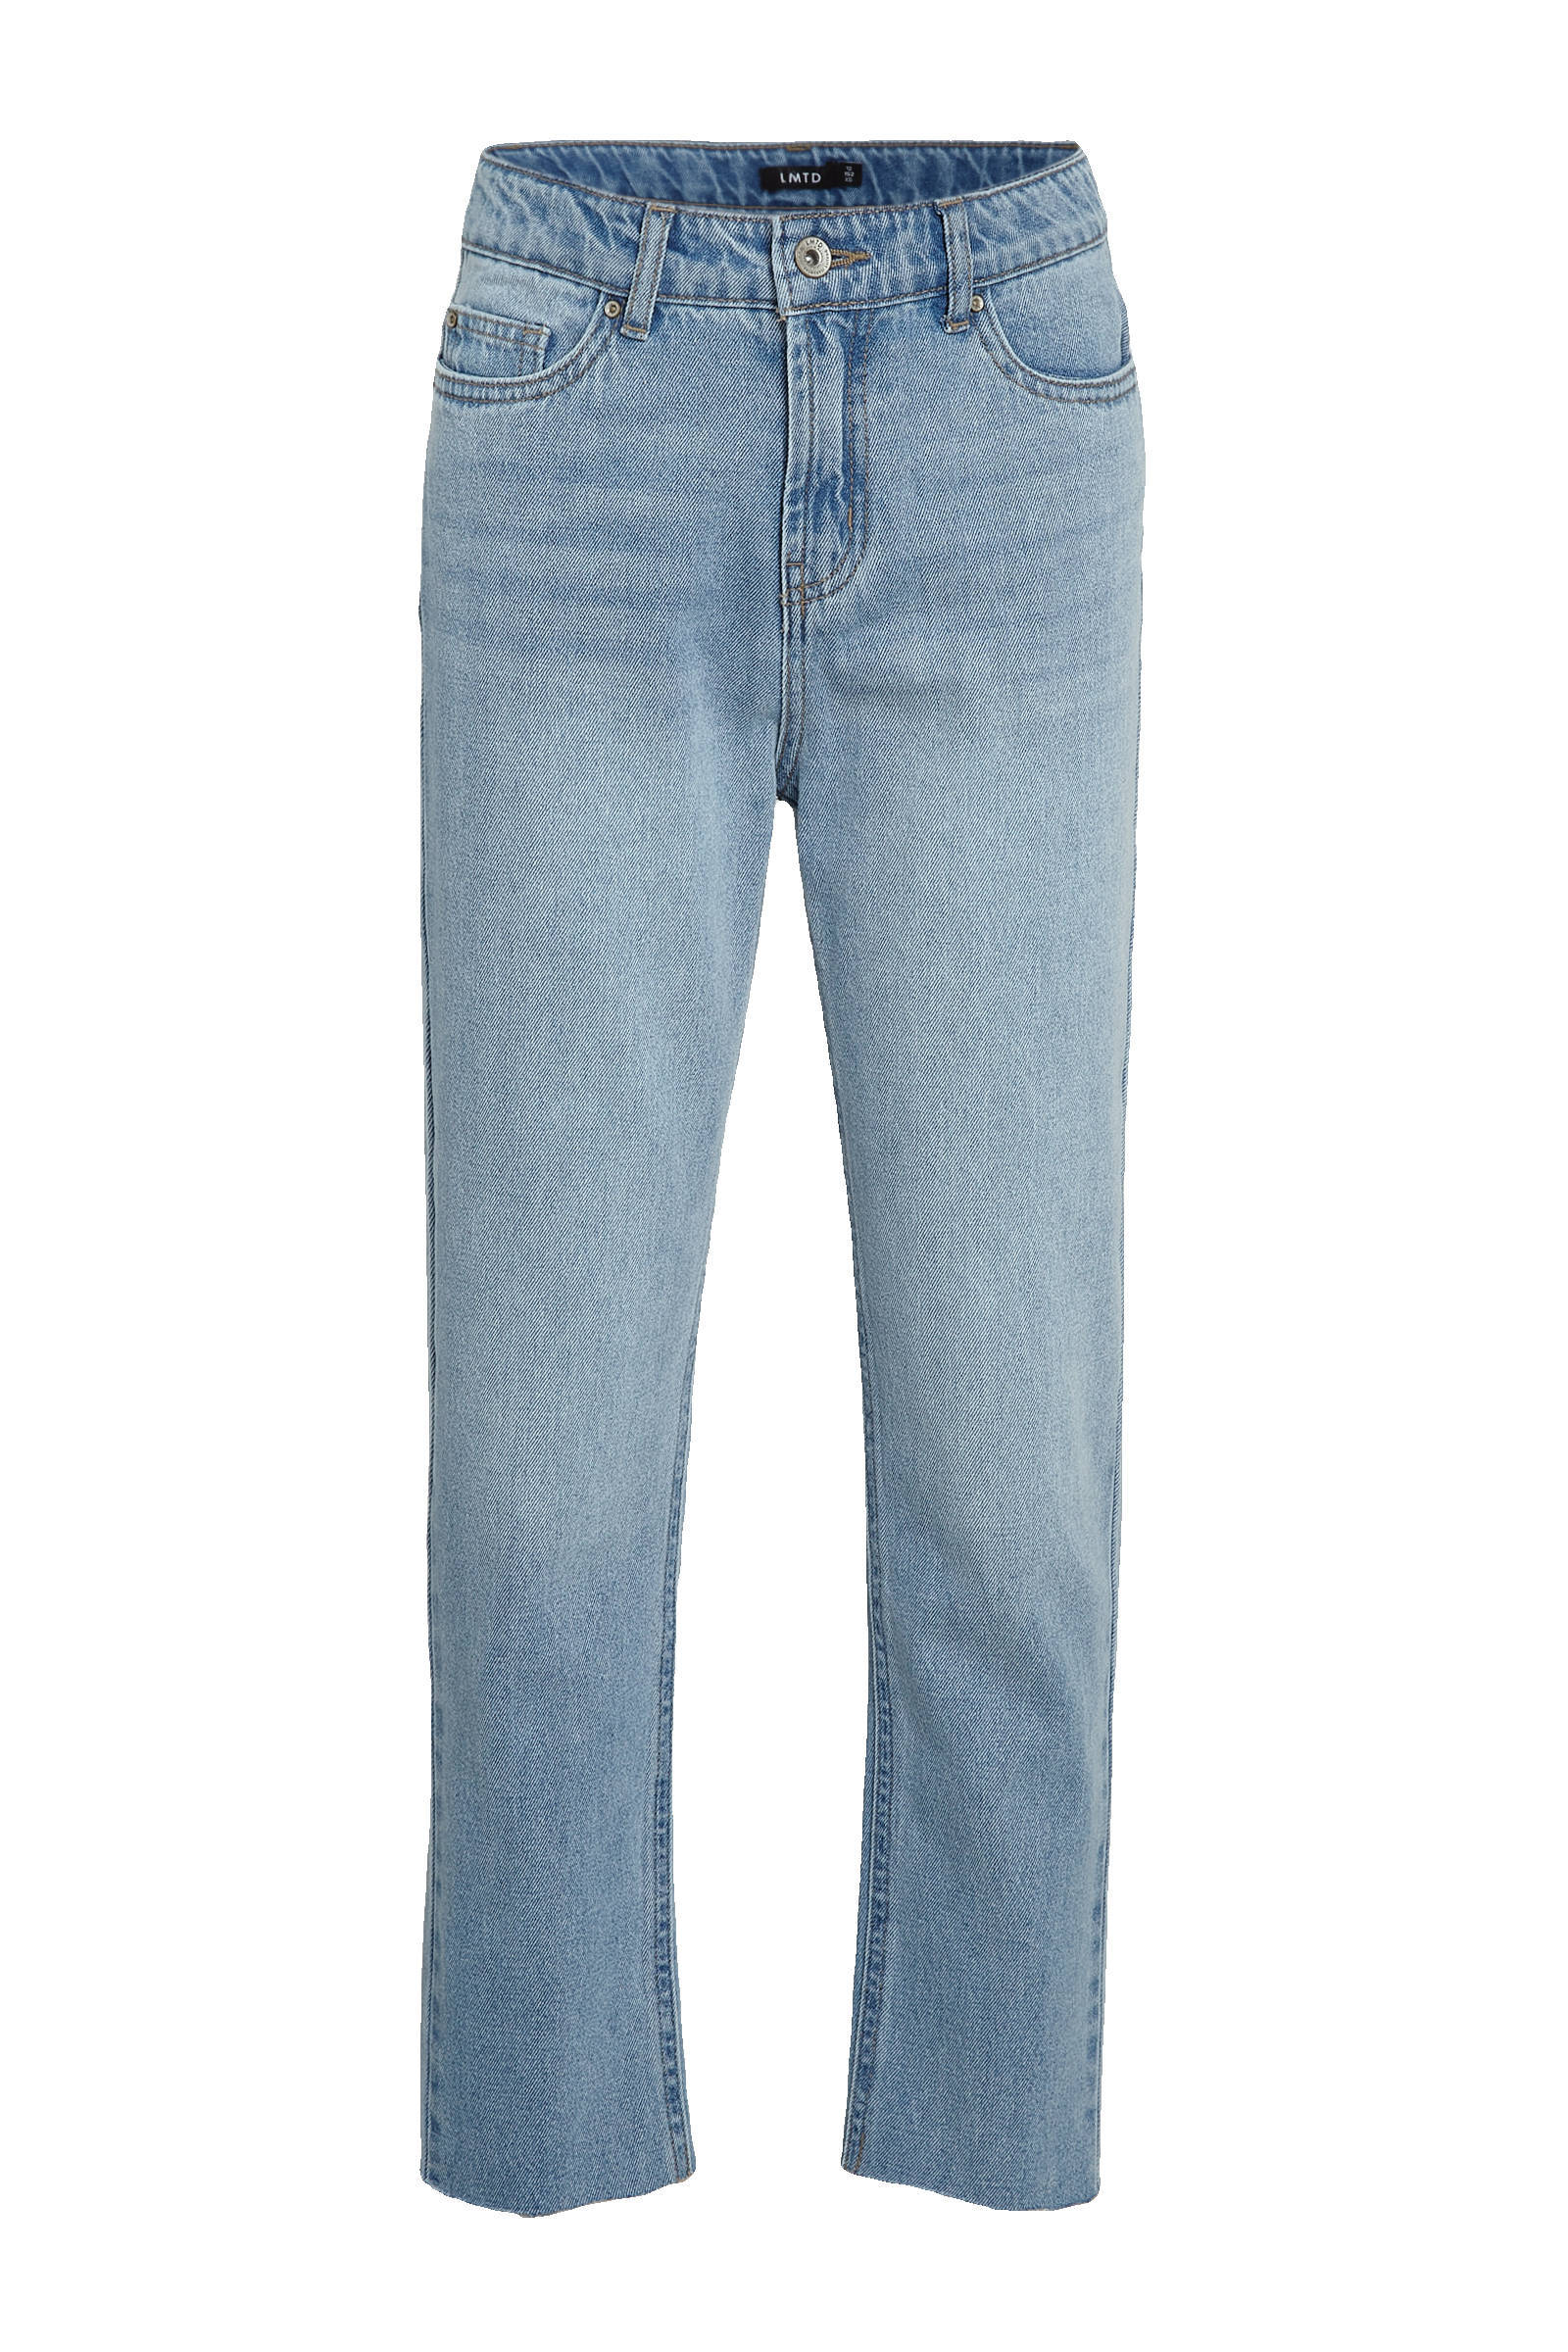 LMTD high waist mom jeans NLFRAVEN light denim online kopen